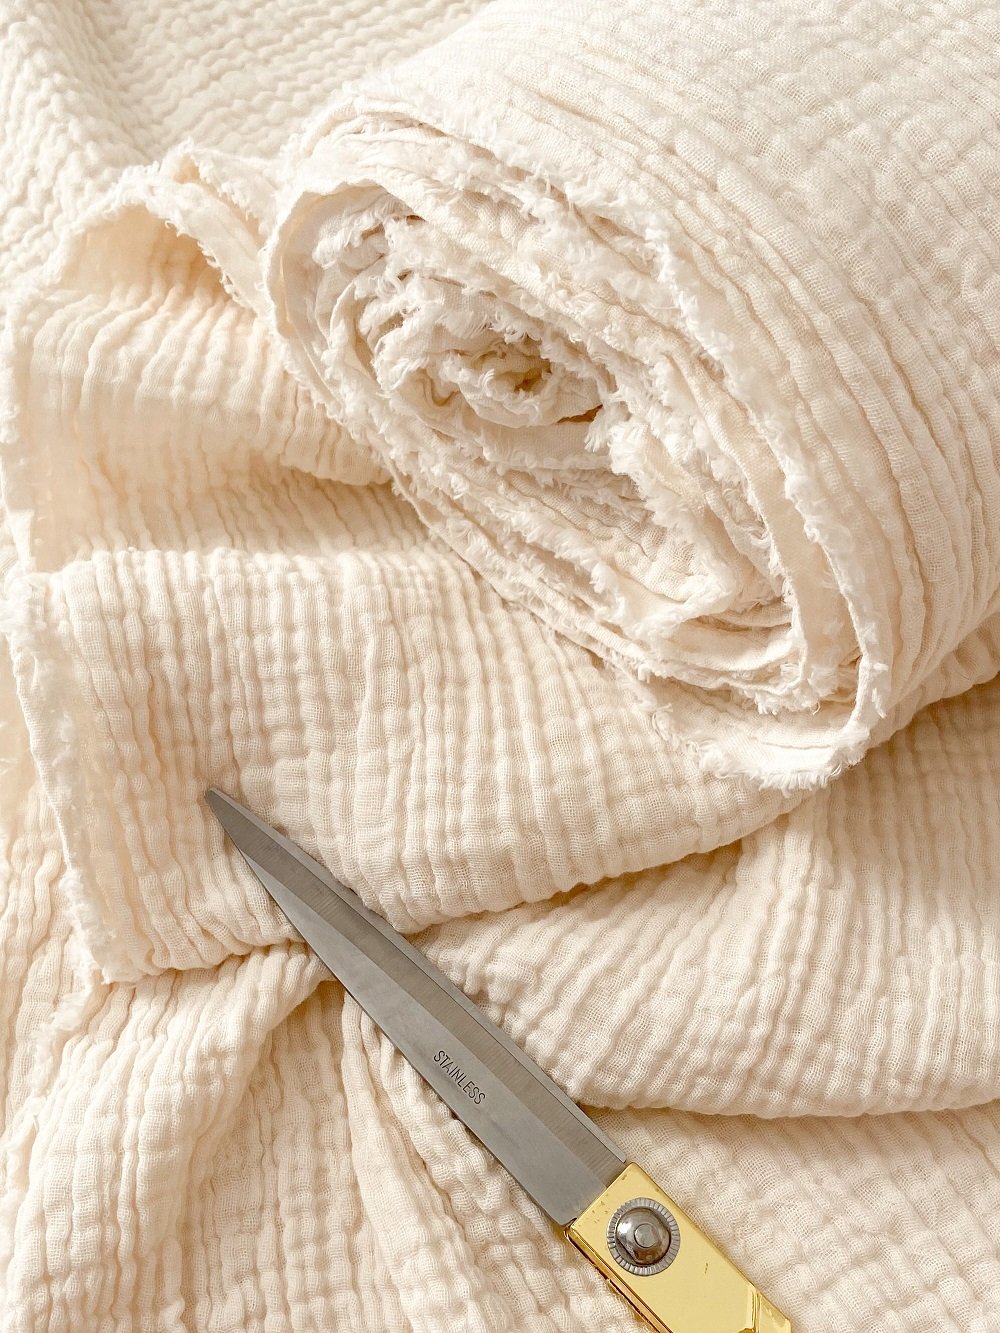 Muestras de tela de algodón | TODOS